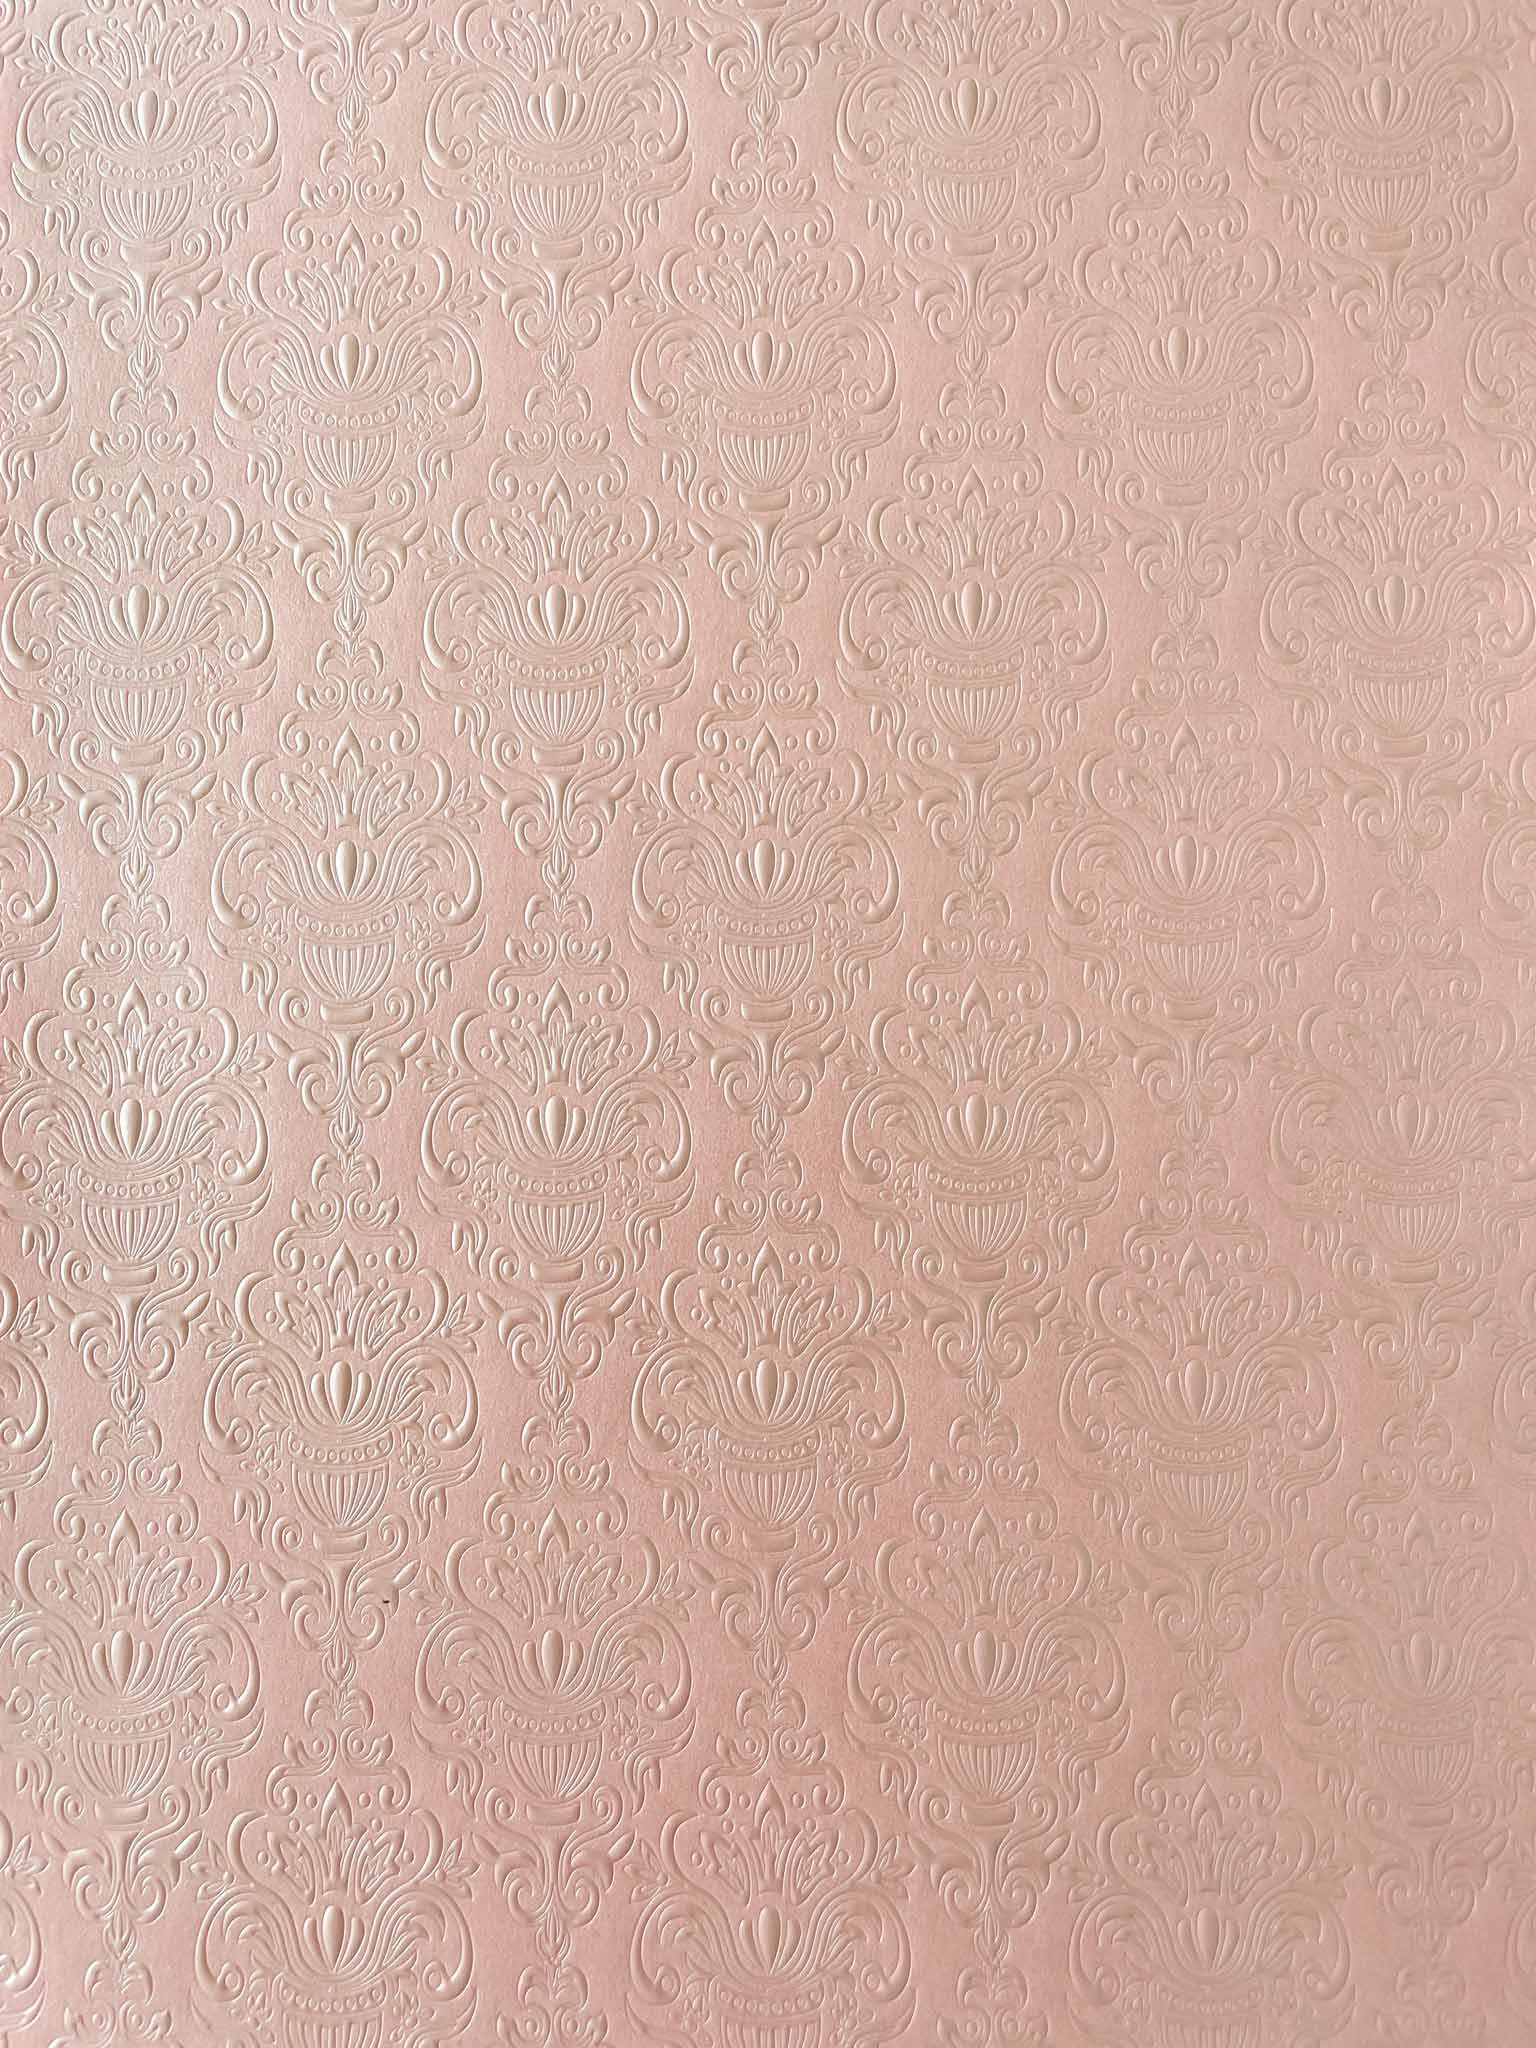 Antoinette Embossed Paper in Pink  ImagineDIY   